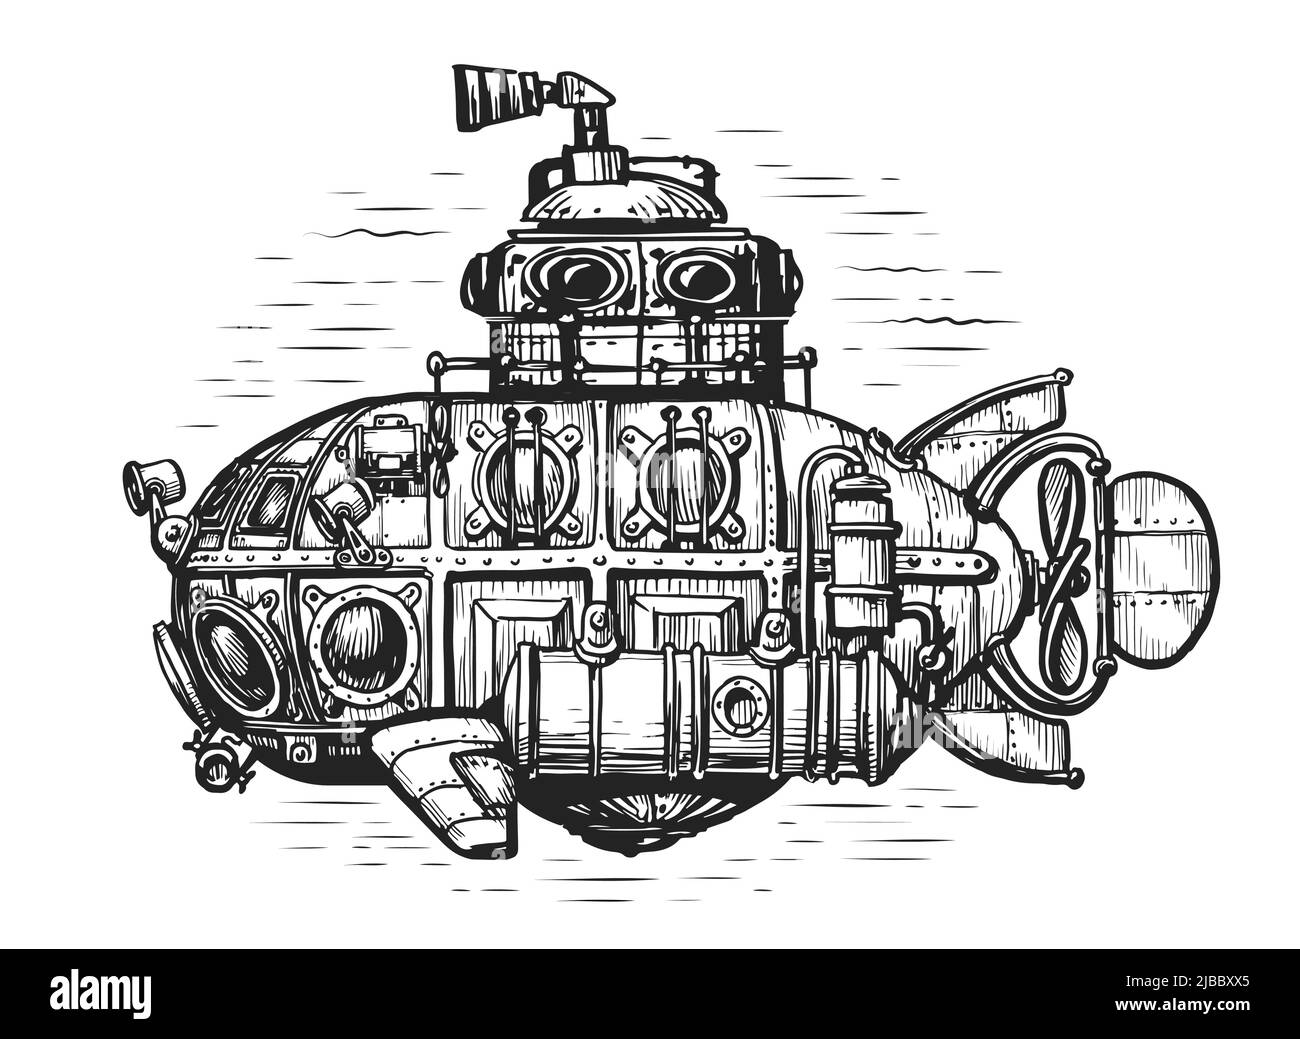 Vintage submarine in sea drawn in engraving style. Hand drawn retro deep-sea bathyscaphe sketch. Vector illustration Stock Vector